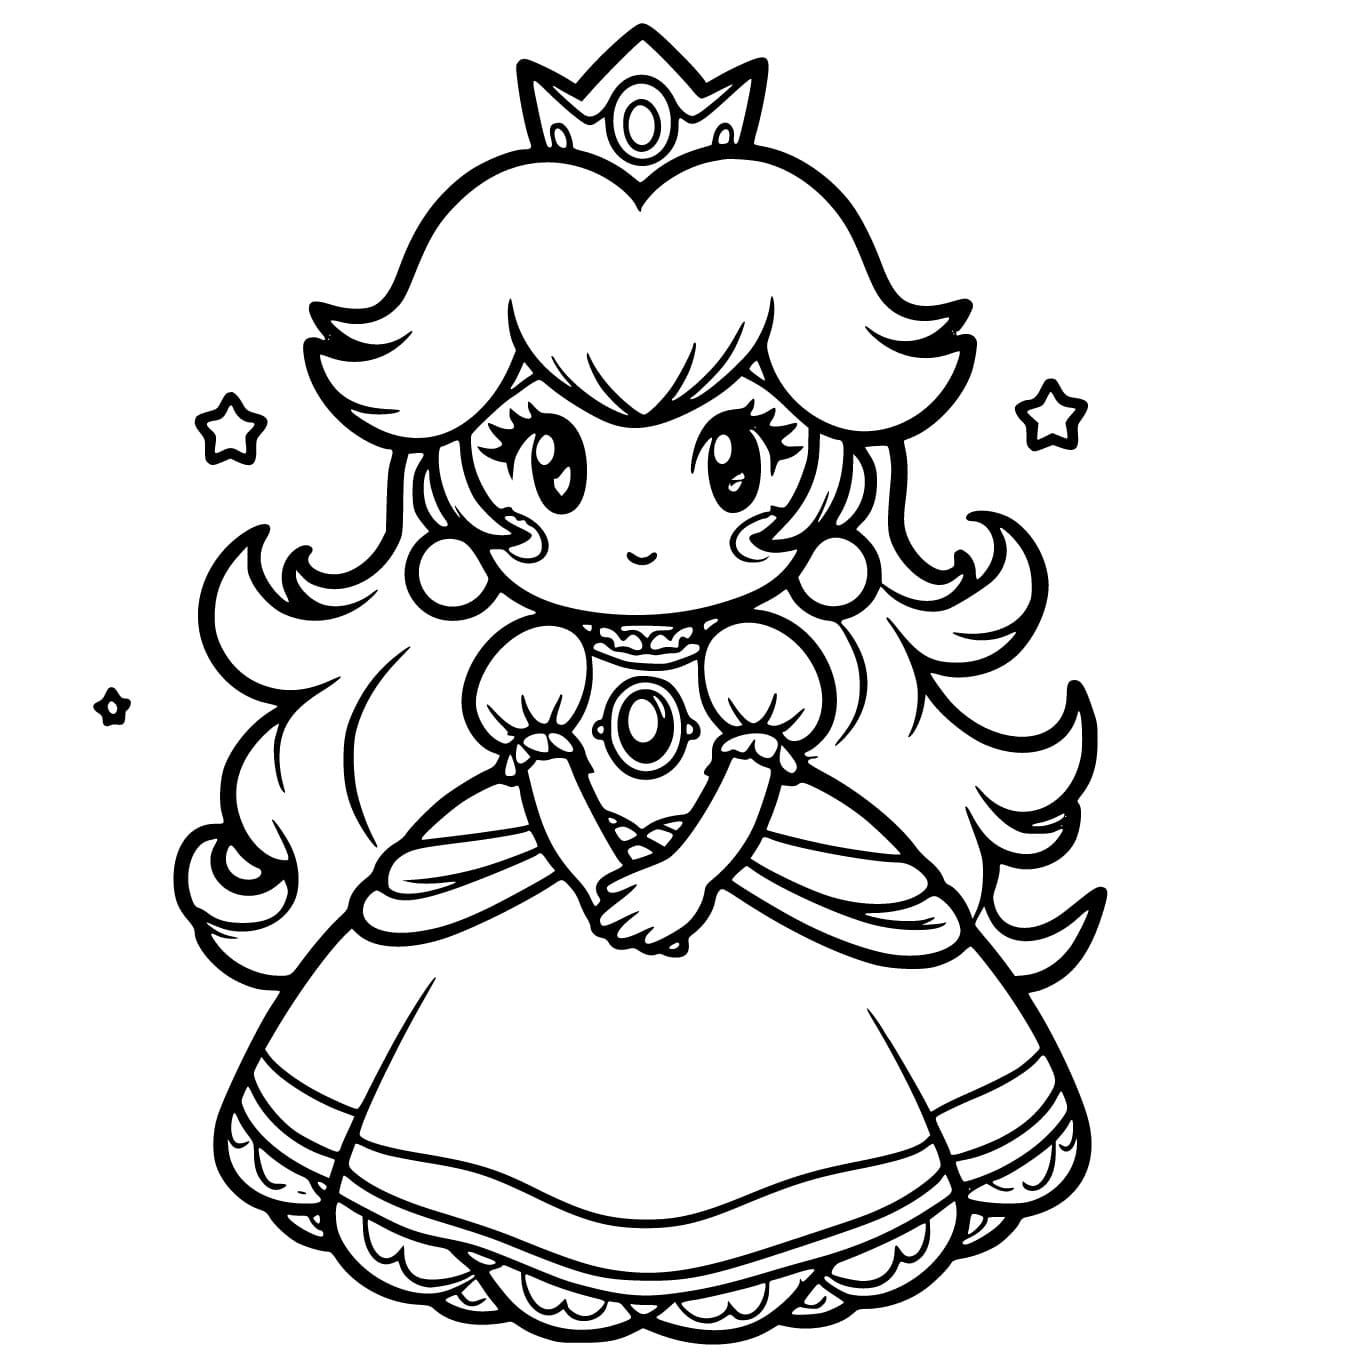 Petite Princesse Peach coloring page